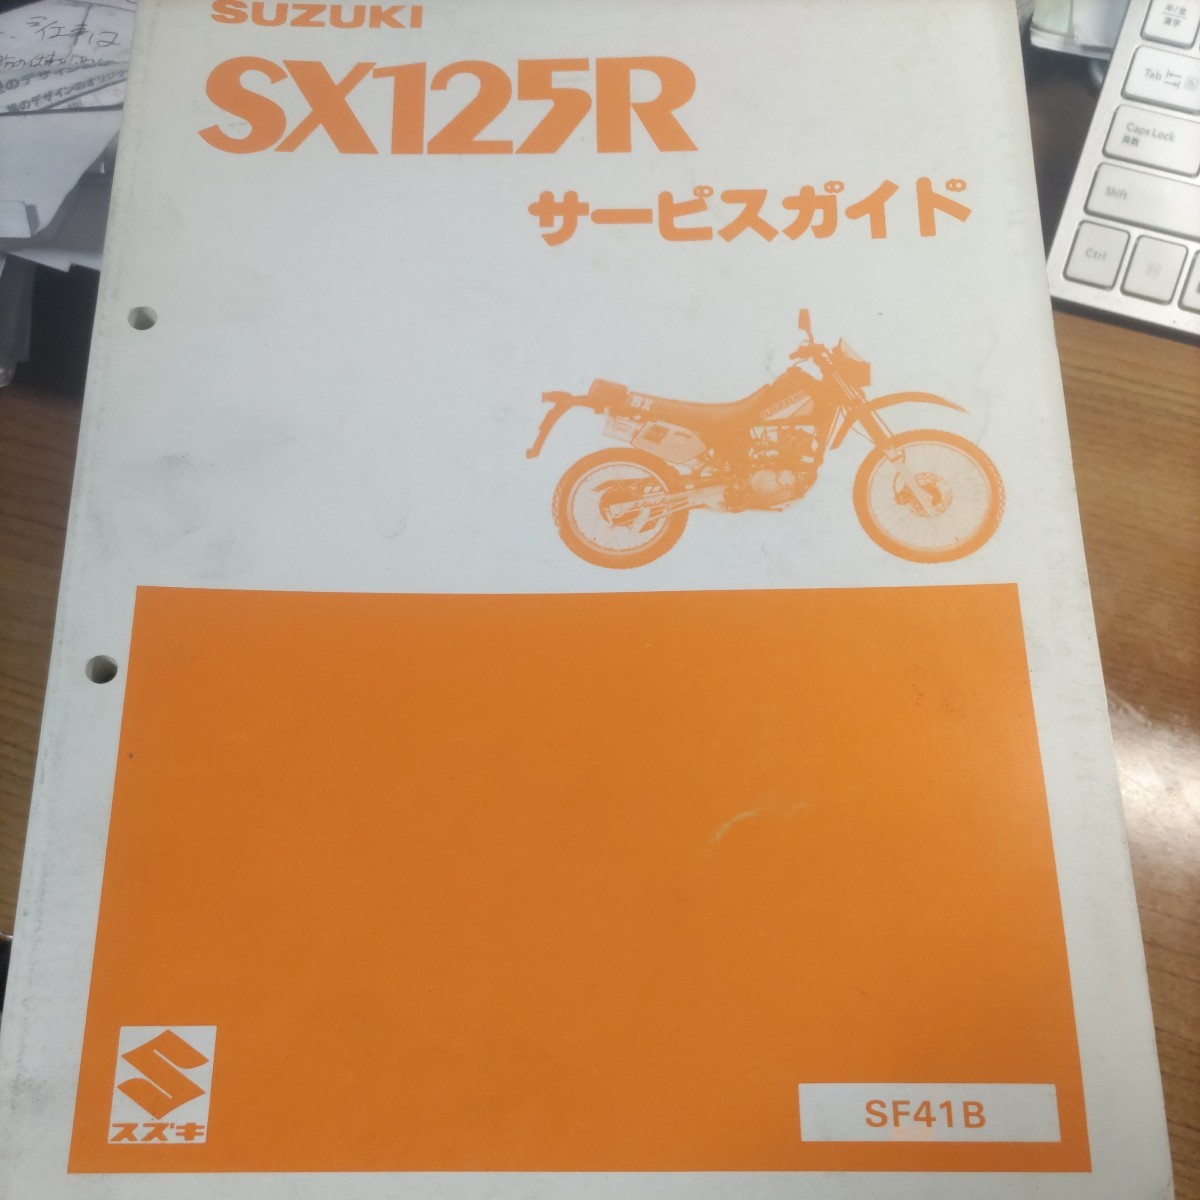 スズキ マニュアル SUZUKI SX125R サービスマニュアル_画像1